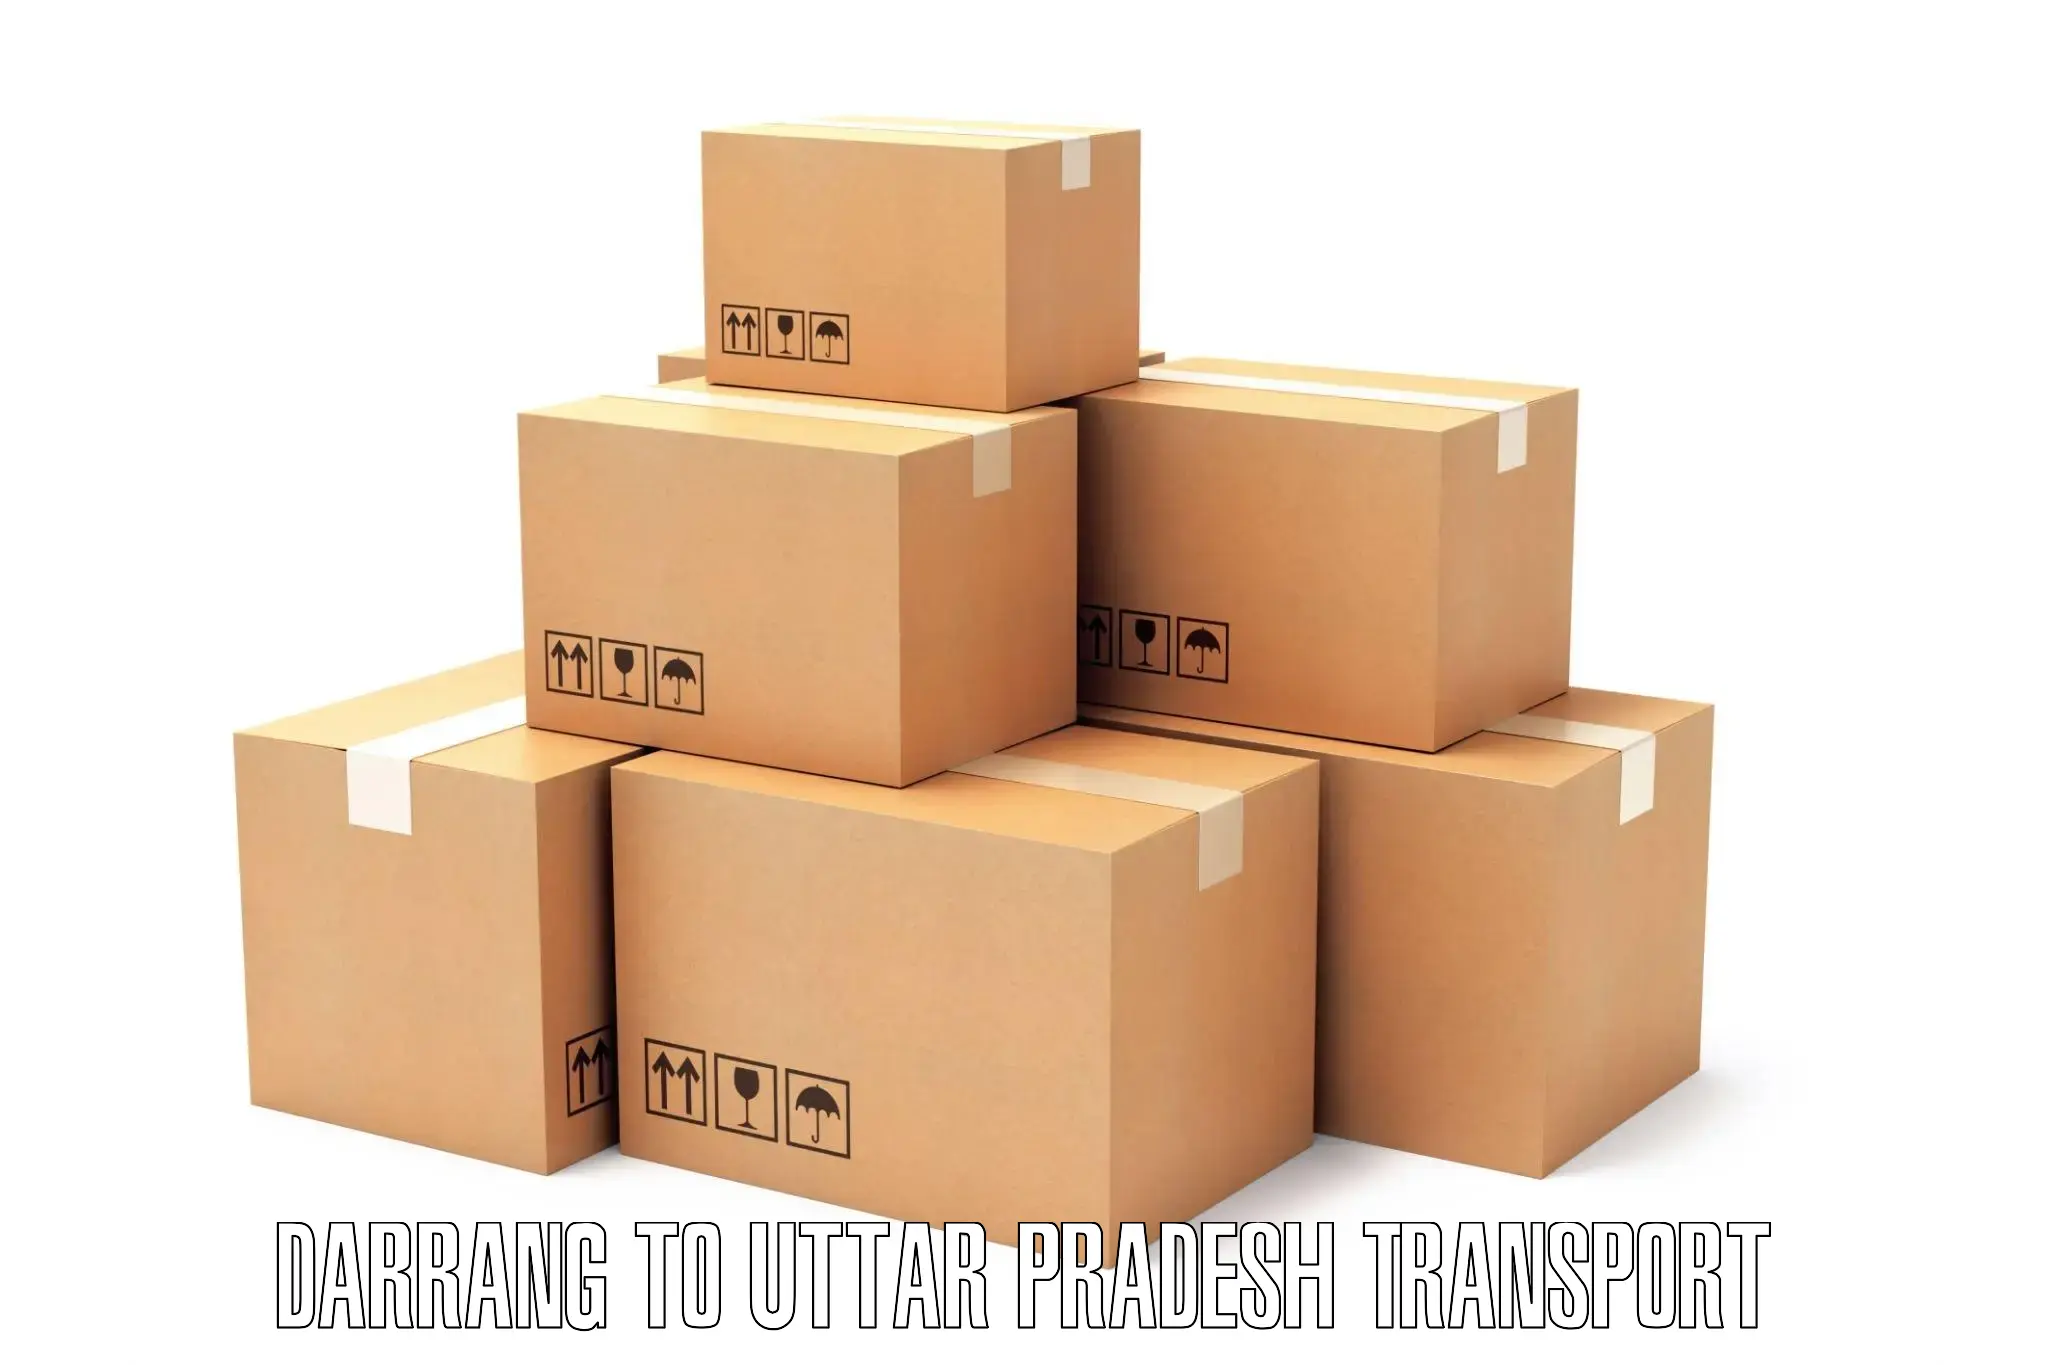 Daily parcel service transport Darrang to Uttar Pradesh